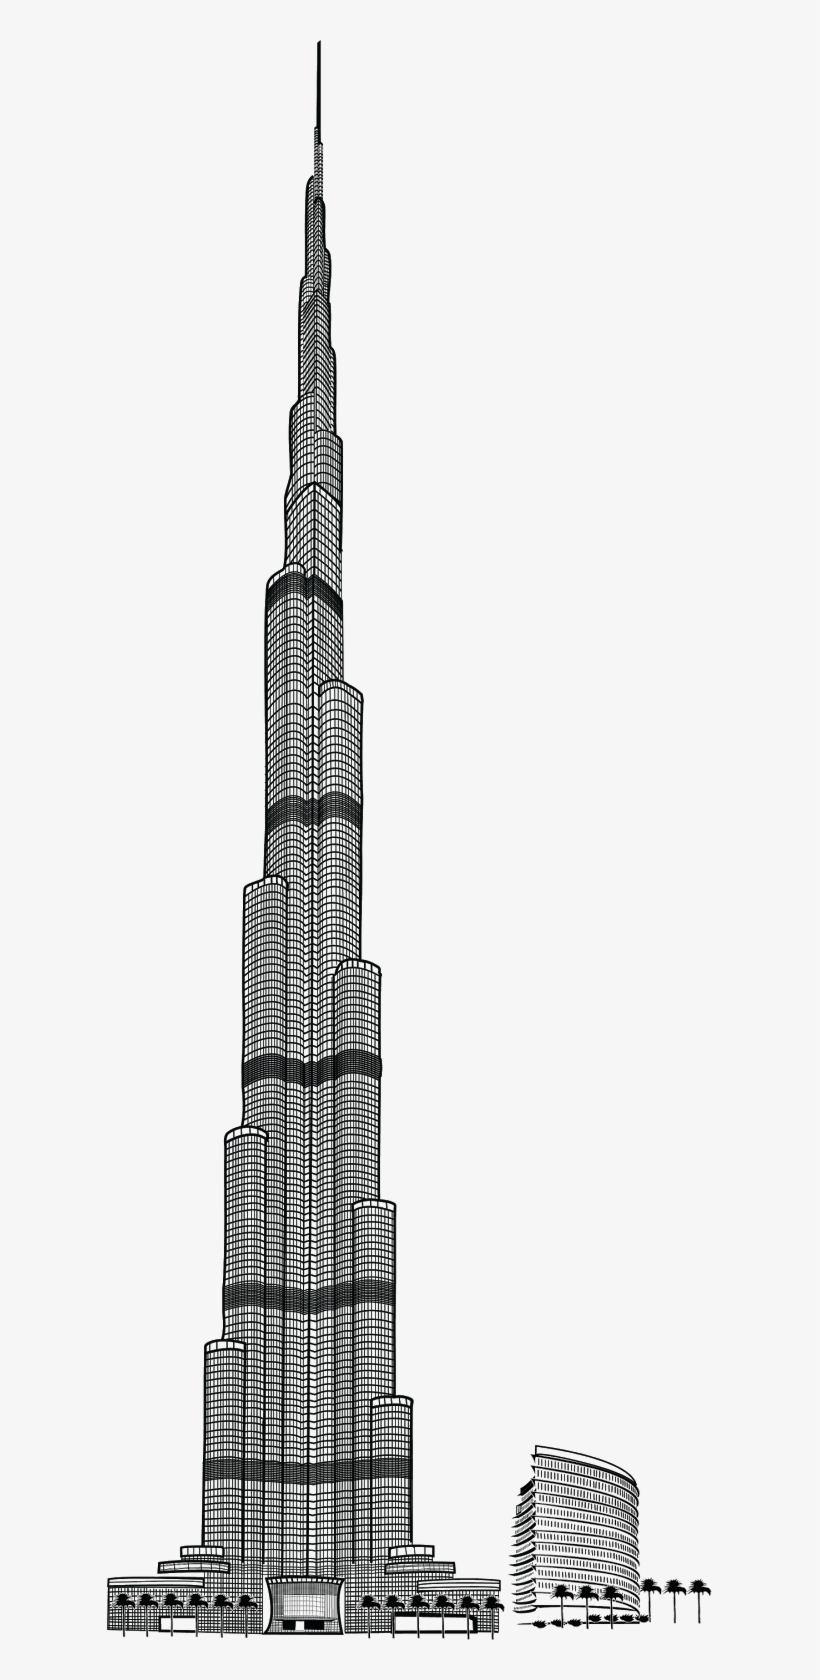 The Burj Khalifa | How To Draw Burj Khalifa Step By Step | Burj Khalifa,  Dubai - YouTube